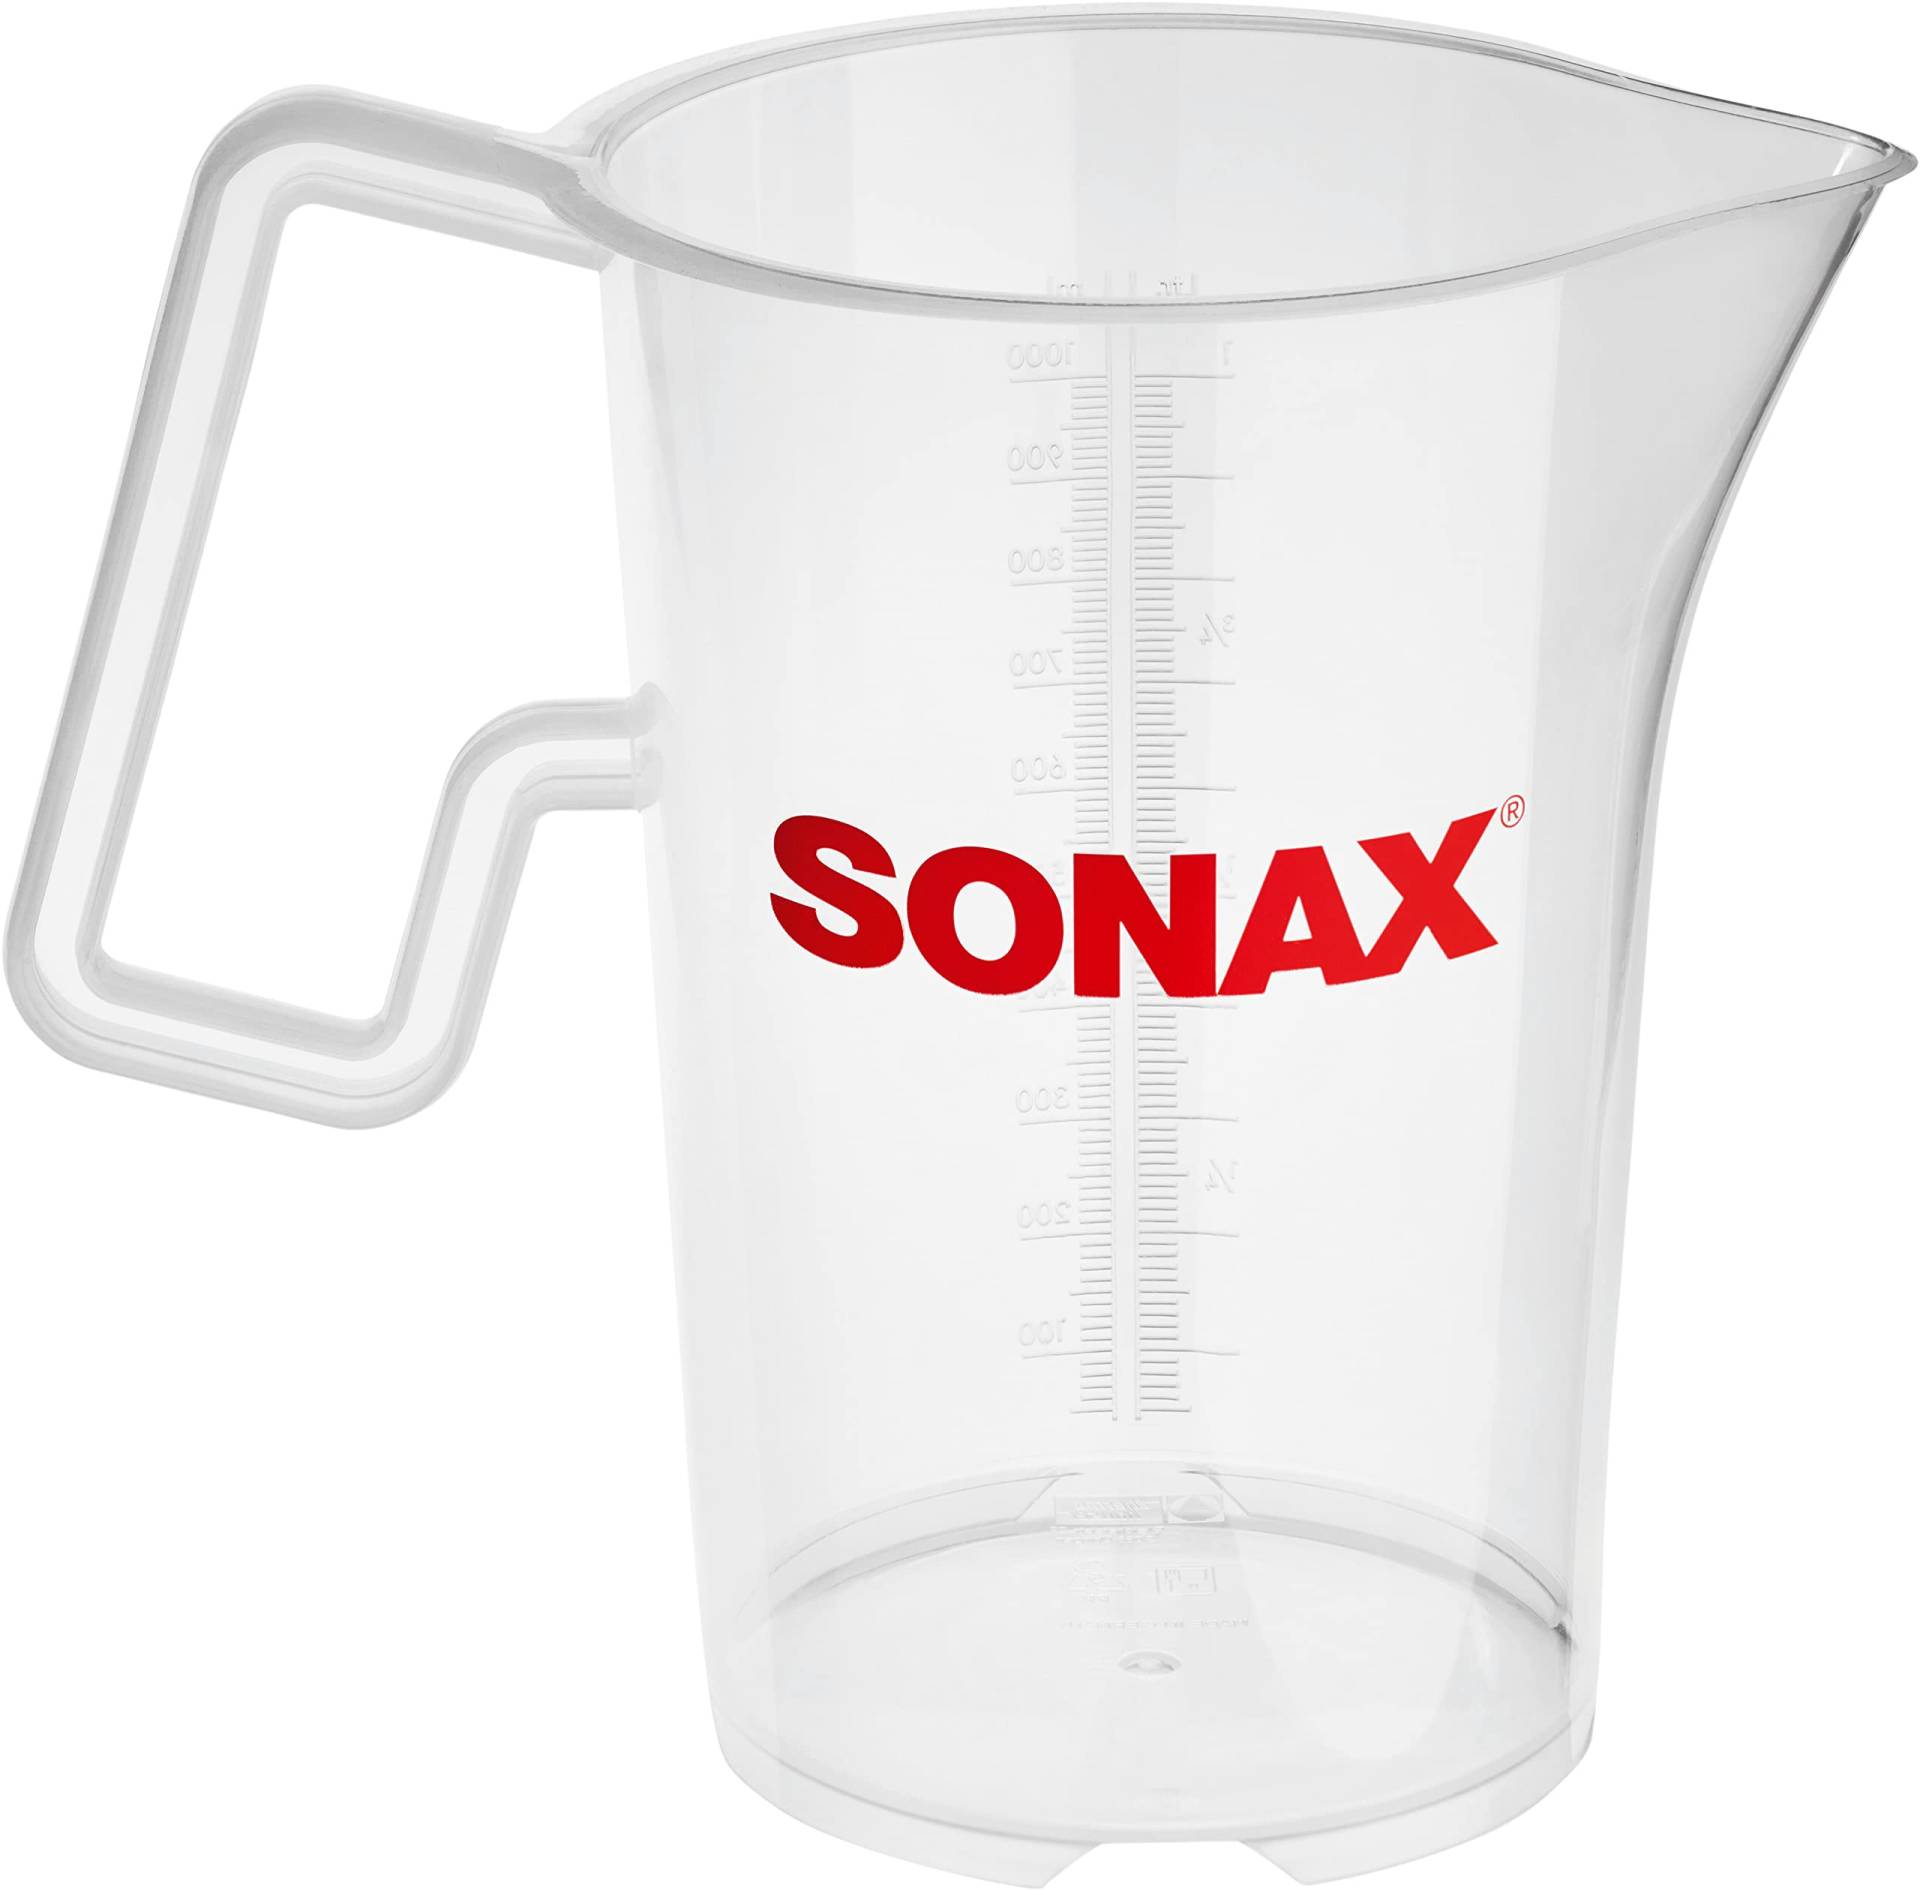 SONAX Messbecher 1 Liter (1 Stück) zur sicheren Dosierung sowie zum Umfüllen von Reinigungskonzentraten etc. | Art-Nr. 04982000 von SONAX